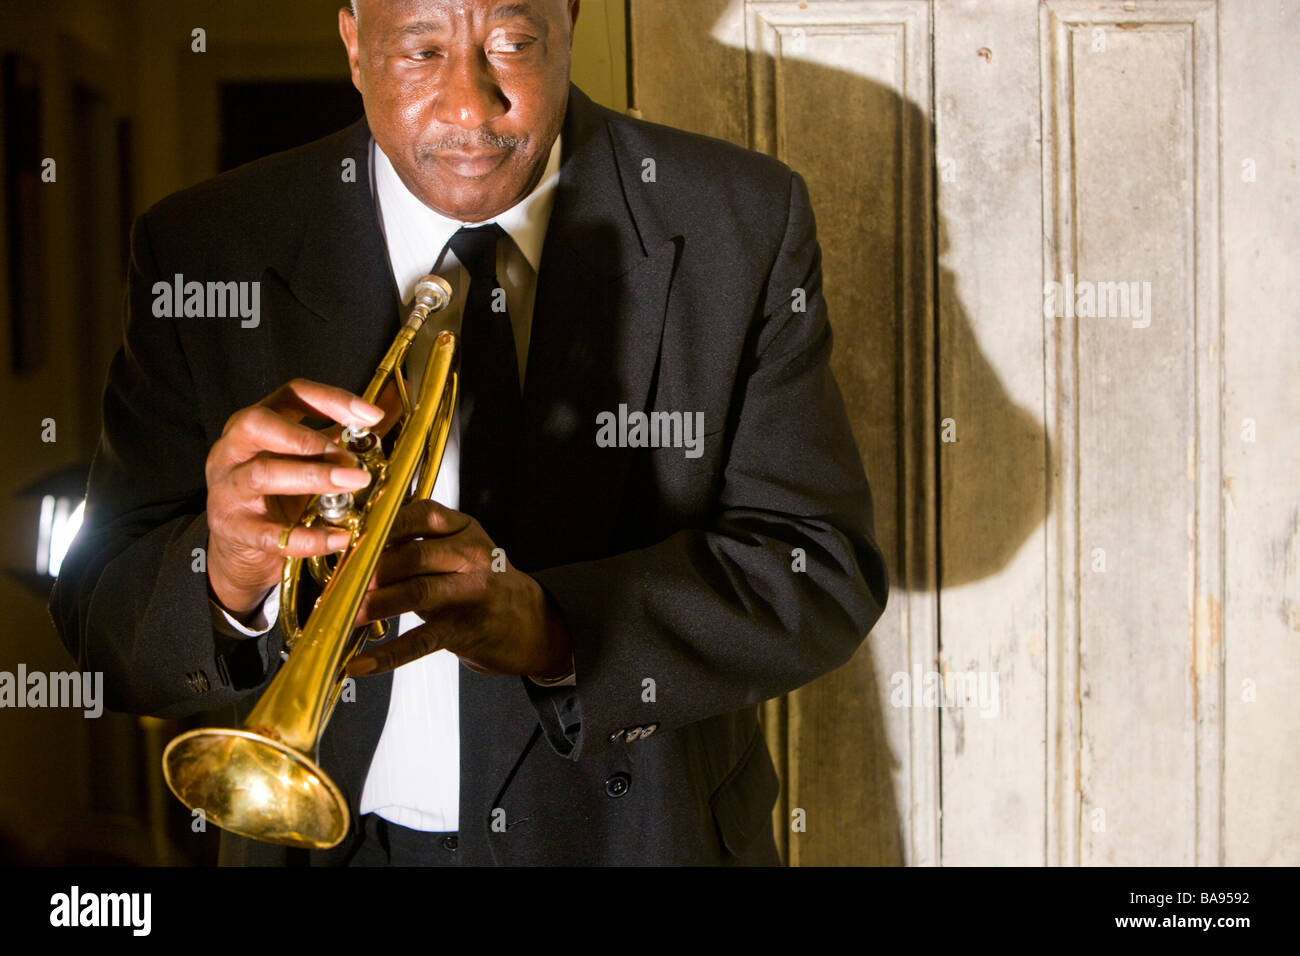 Senior African American musician holding trumpet, située près de la porte Banque D'Images